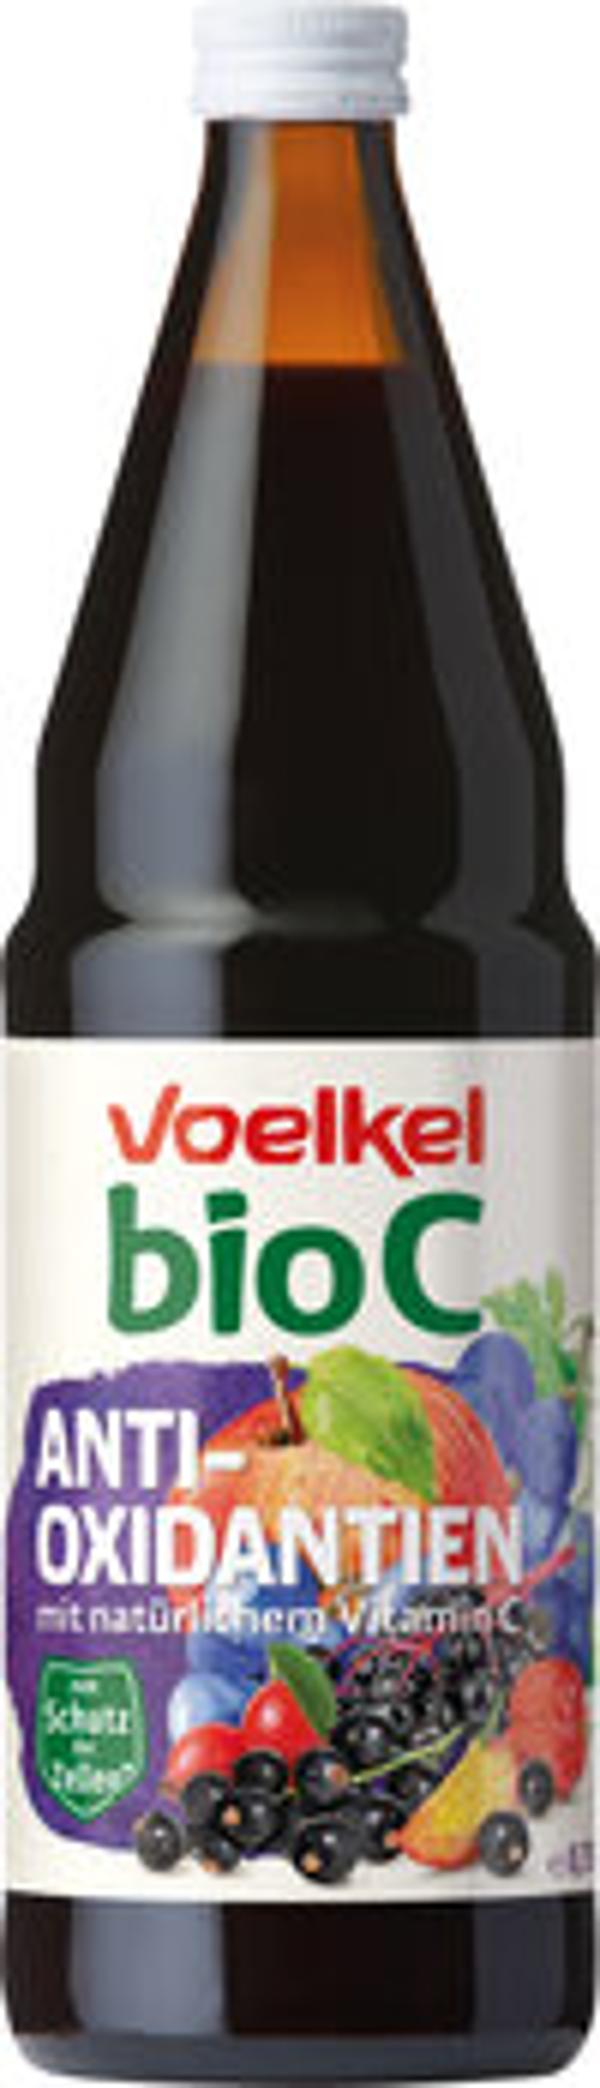 Produktfoto zu bioC Antioxidantien, 0,75 l